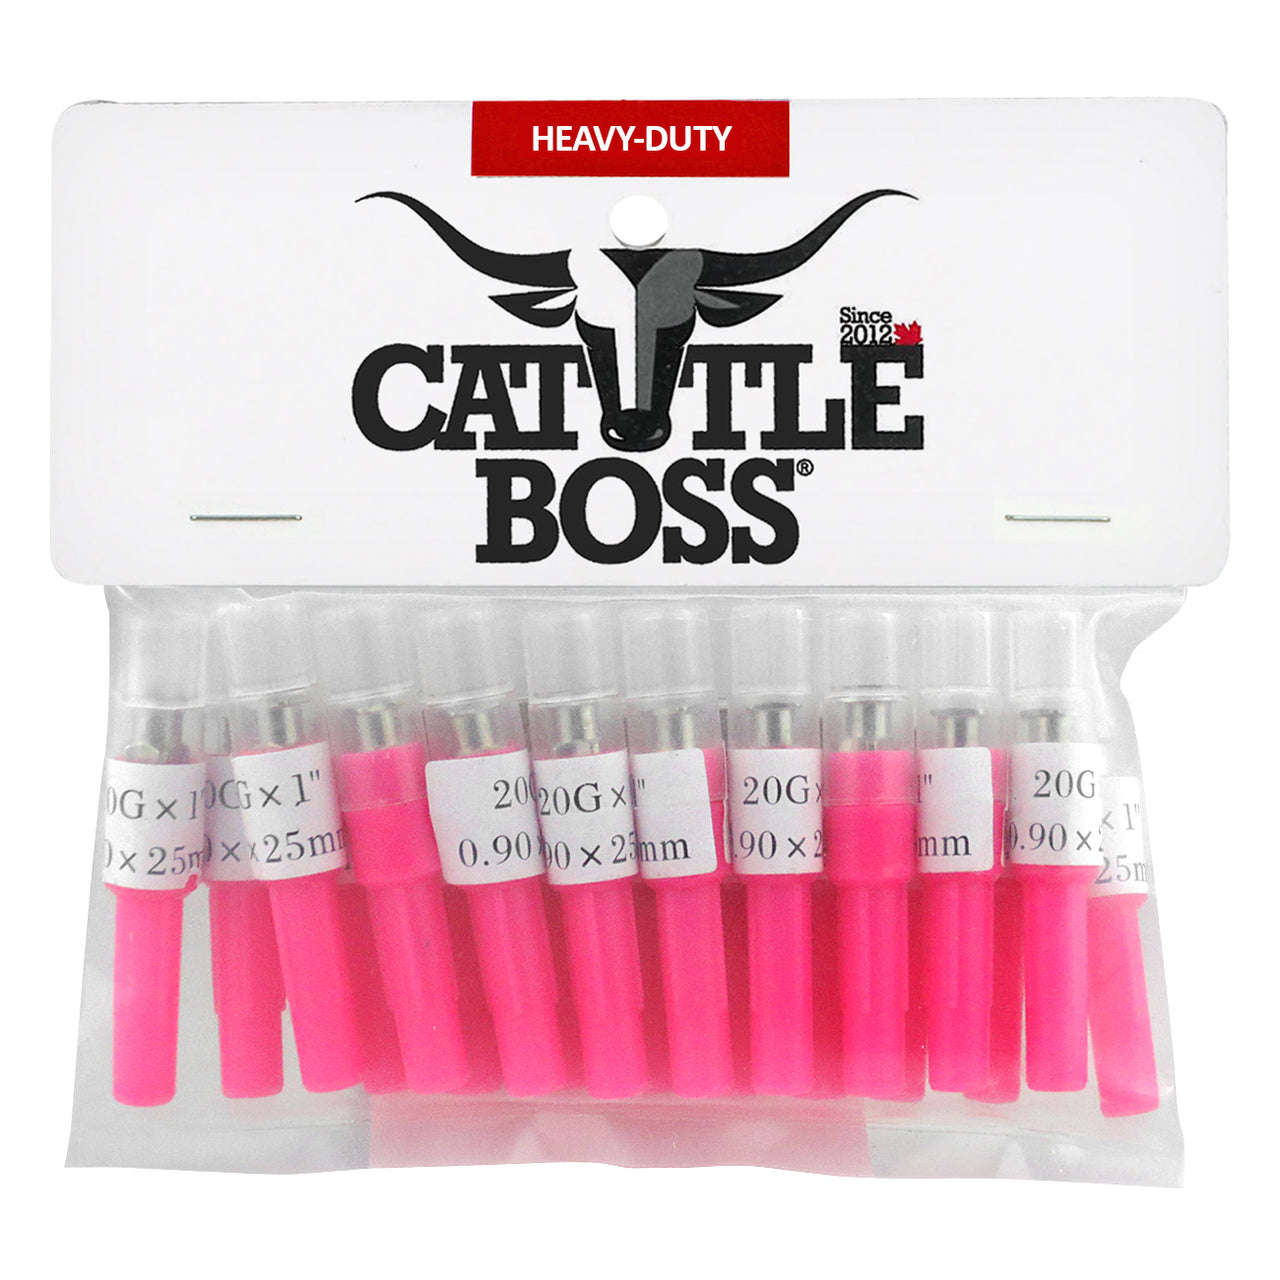 Cattle Boss Heavy-Duty Brass Hub (20 Pack) 20 X1 - Needle Cattle Boss - Canada